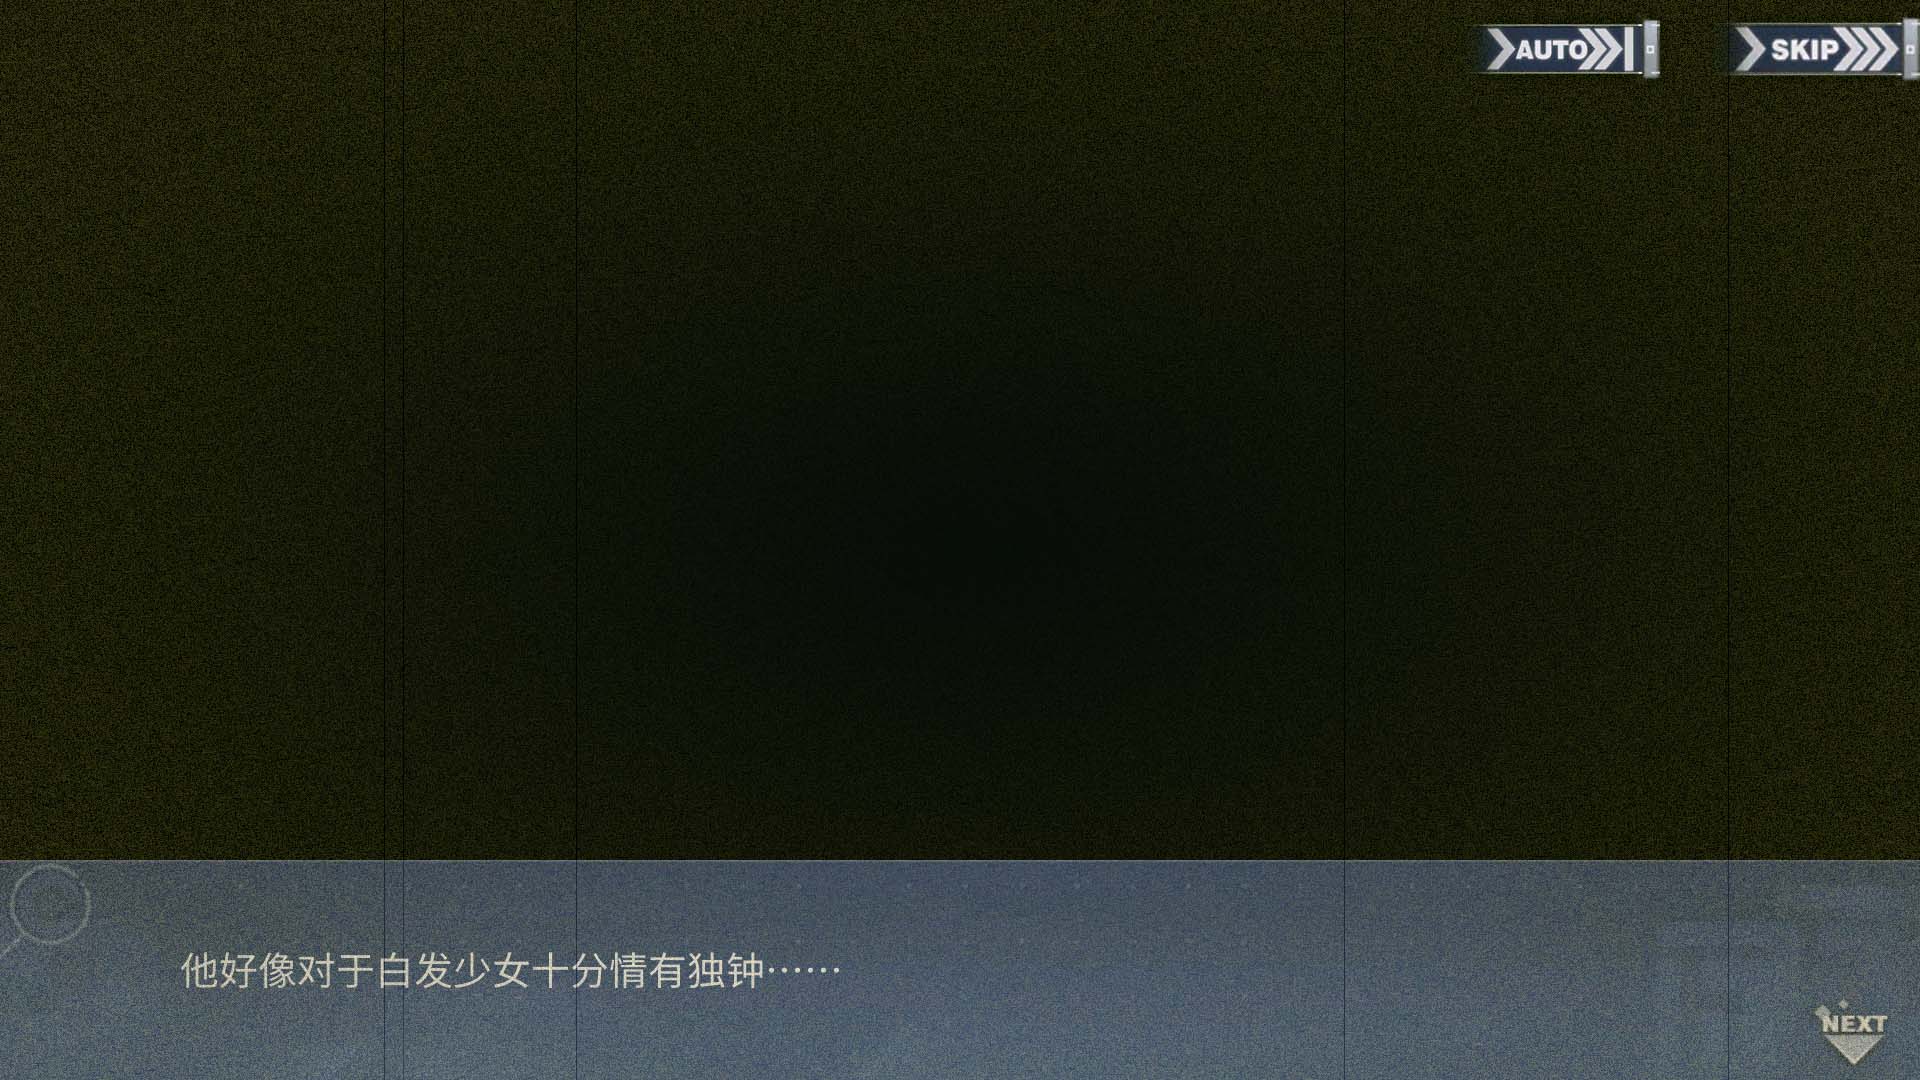 回忆 虹彩的终幕曲 746F776572018.jpg